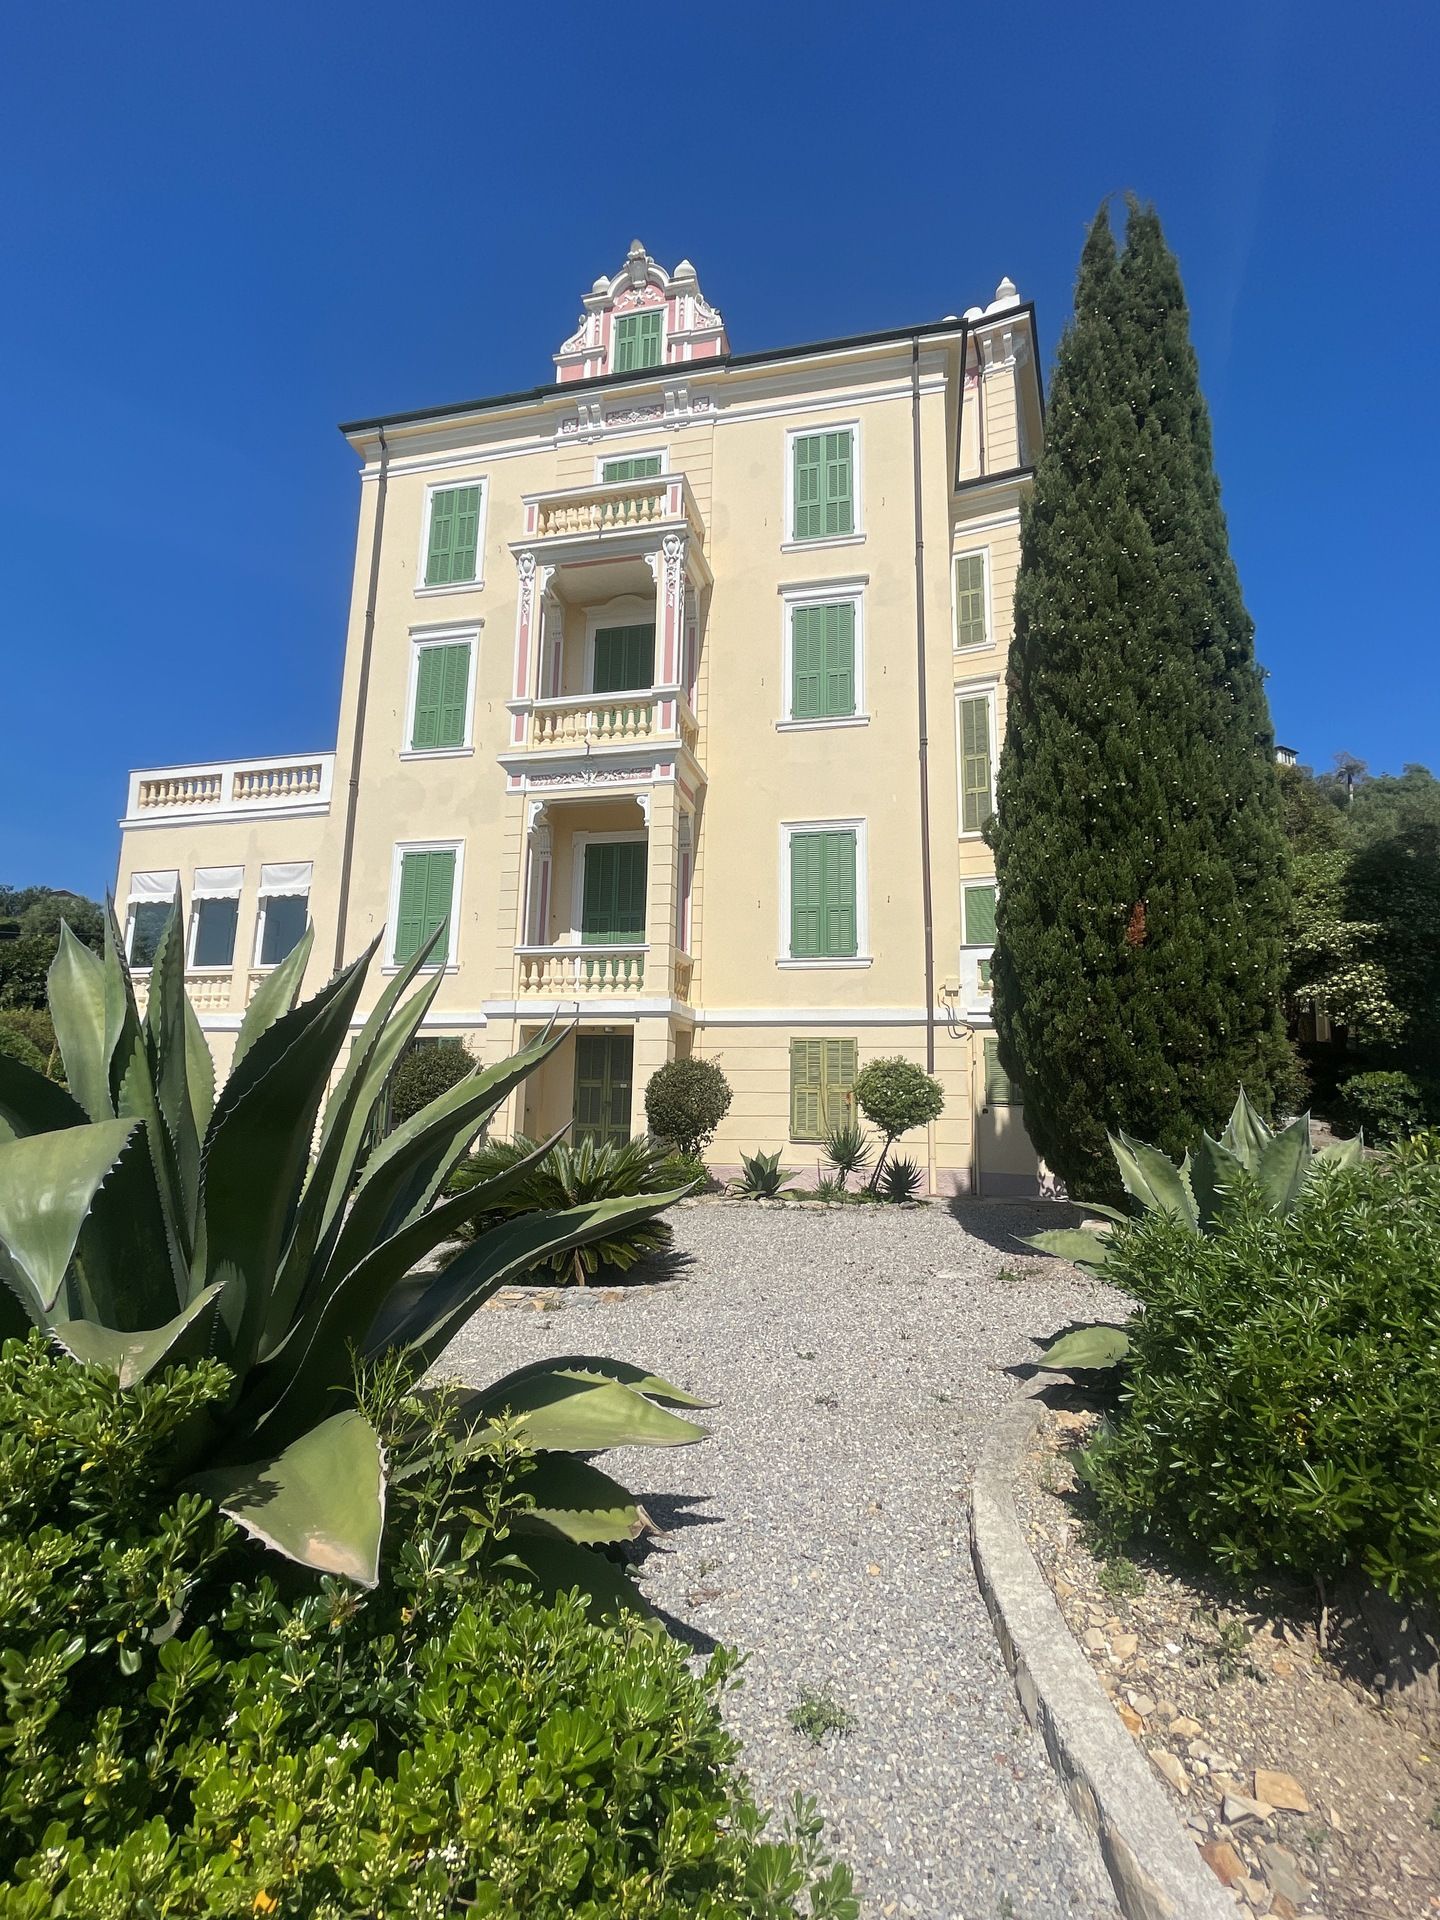 For sale villa in quiet zone Bordighera Liguria